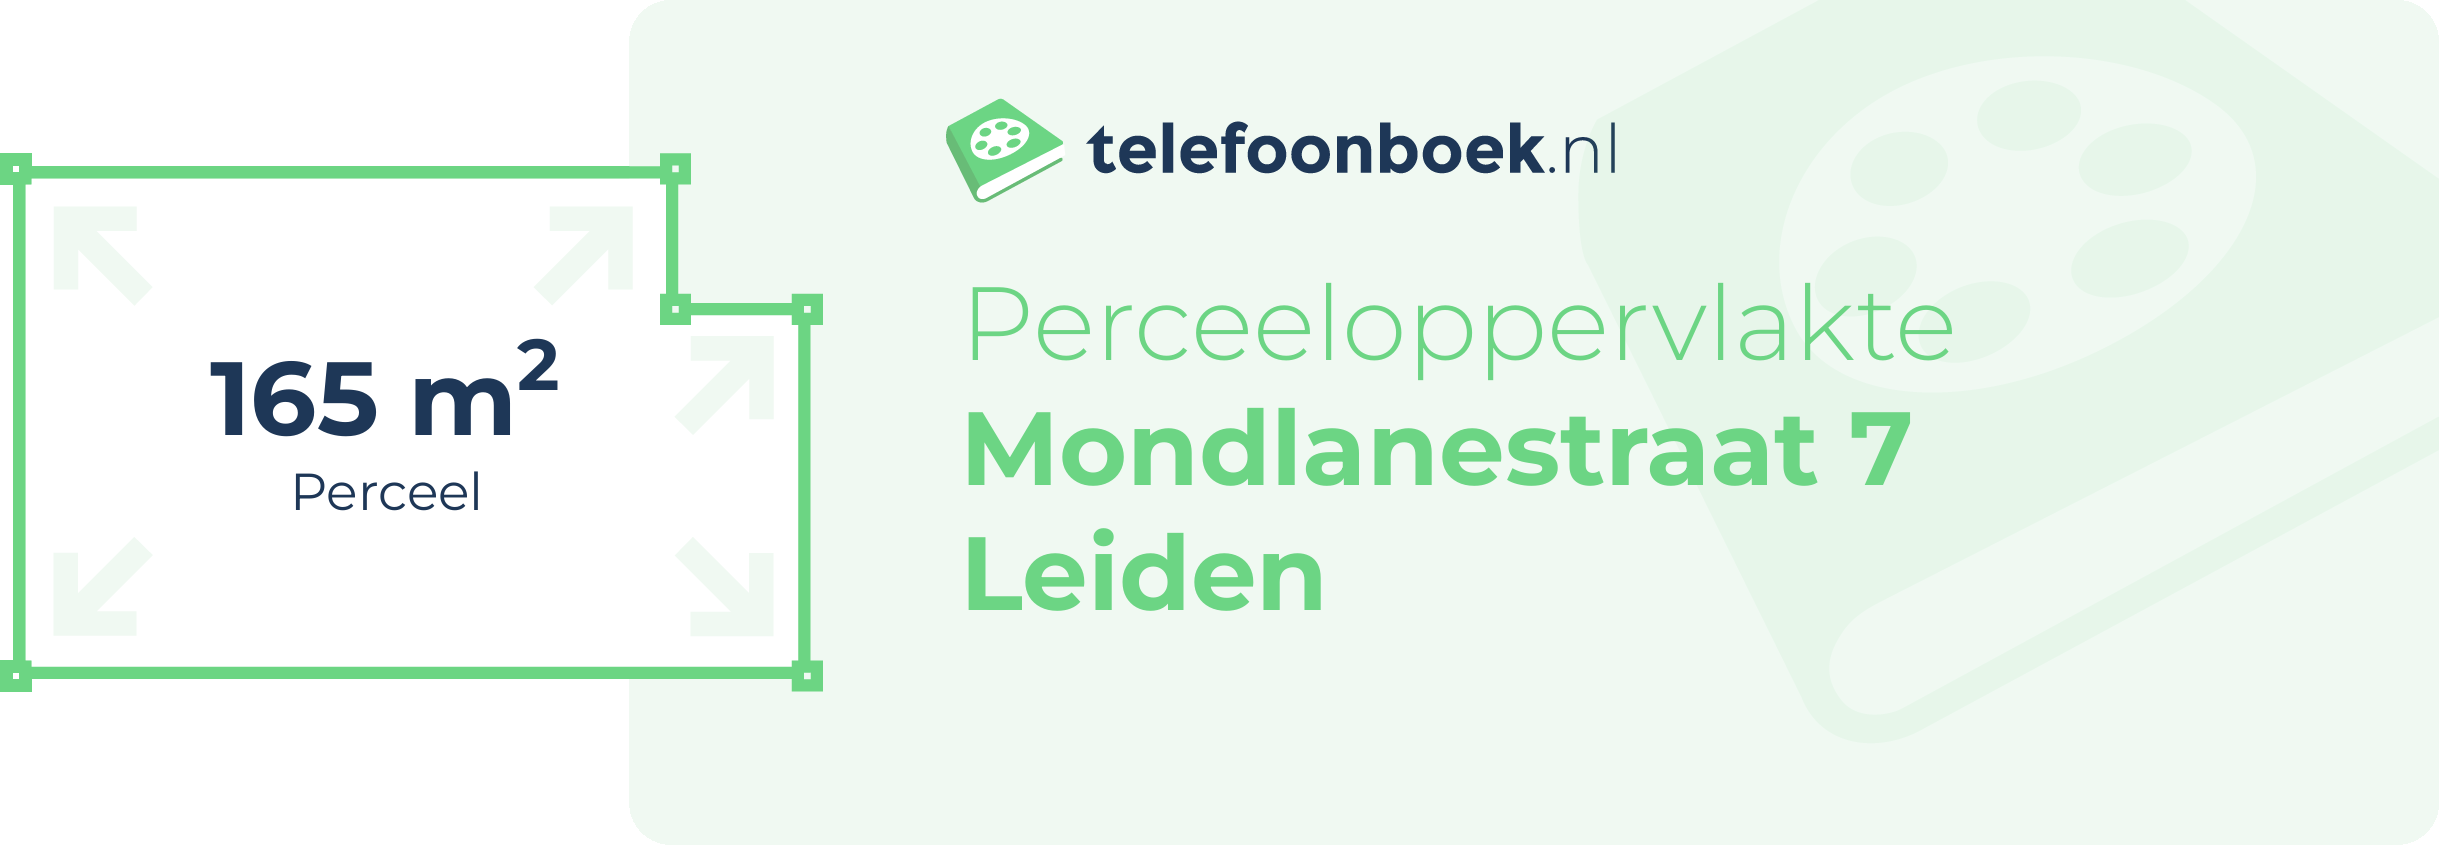 Perceeloppervlakte Mondlanestraat 7 Leiden